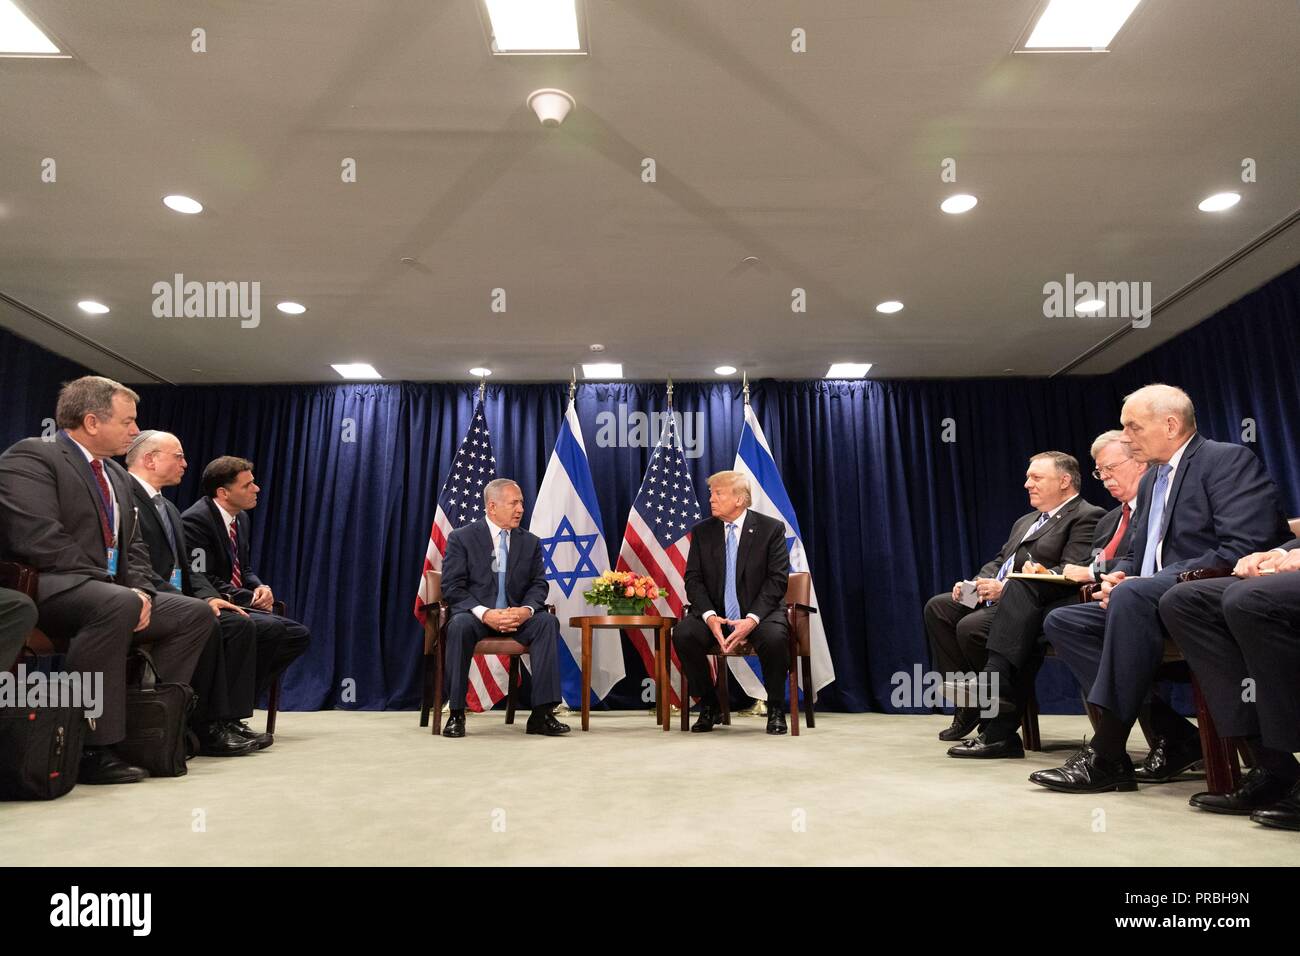 Us-Präsident Donald Trump während eines bilateralen Treffens mit dem israelischen Ministerpräsidenten Benjamin Netanjahu am Rande der Generalversammlung der Vereinten Nationen vom 26. September 2018 in New York, New York. Stockfoto